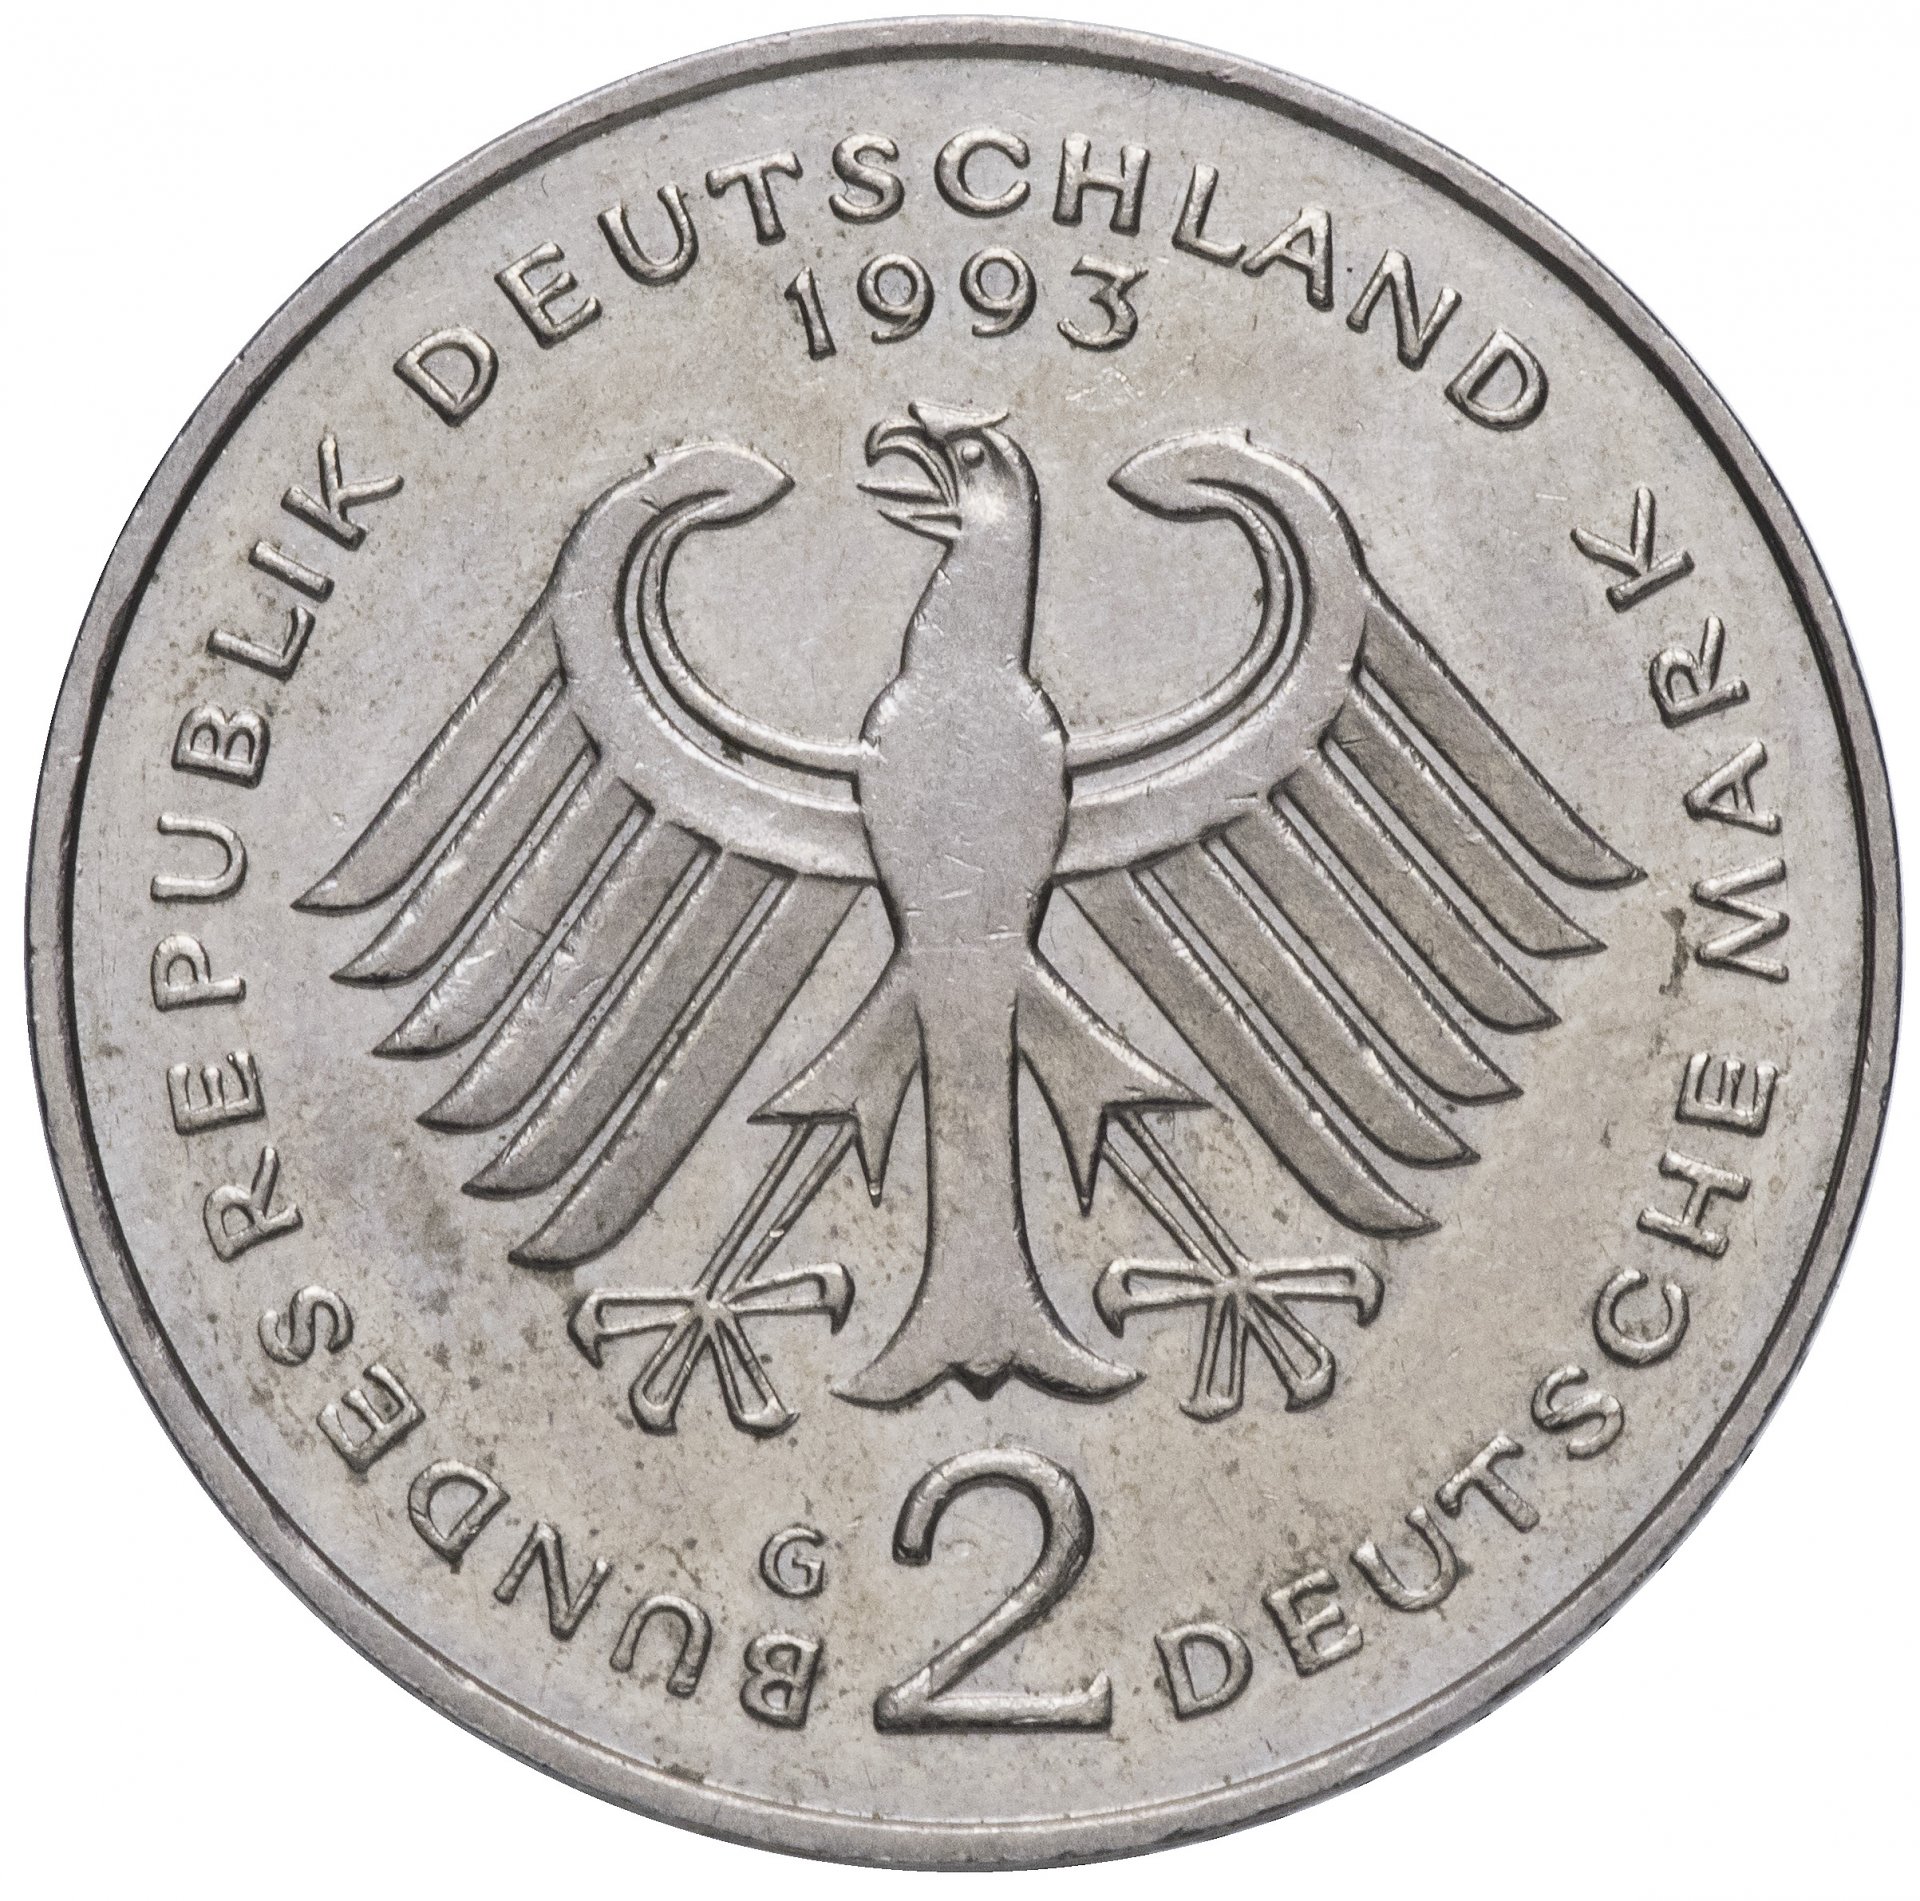 2012 год германии. Монеты Германии 1994. Монета 2 марки 1994. 2 Марки 1990 года. 2 Немецких марки.